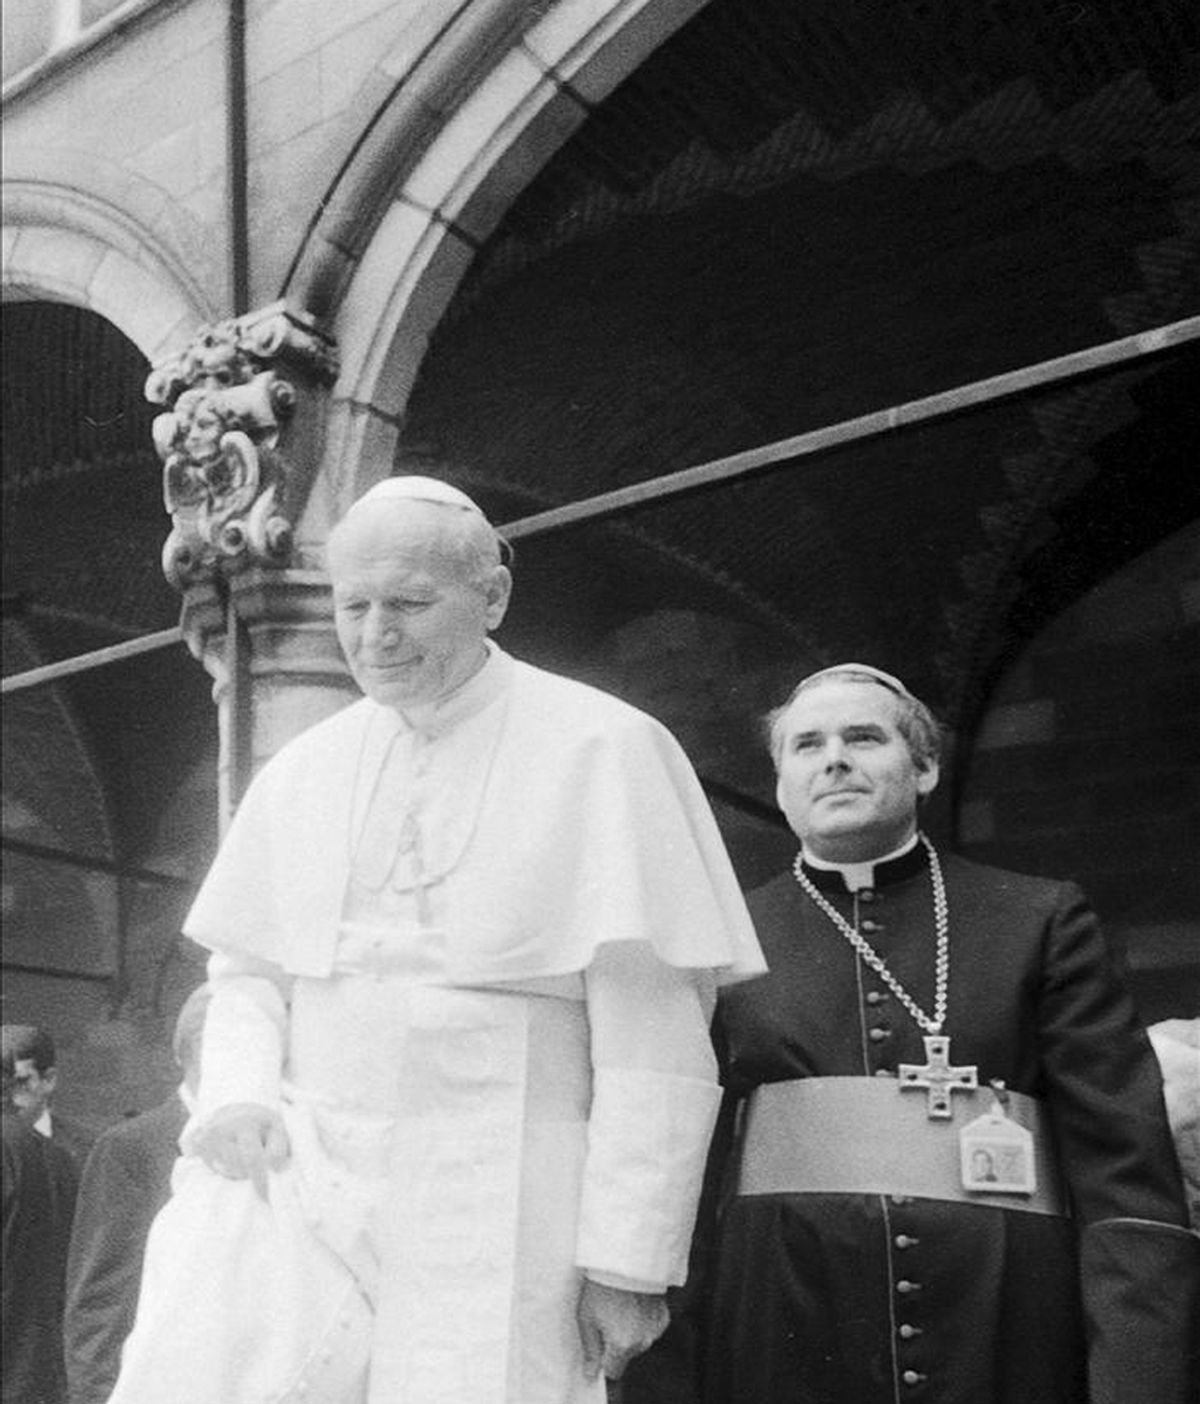 Fotografía de archivo tomada el 17 de mayo de 1985 que muestra al obispo de Brujas Roger Joseph Vangheluwe (d) junto al papa Juan Pablo II durante la visita de este último a la localidad de Ypres (Bélgica). EFE/Archivo